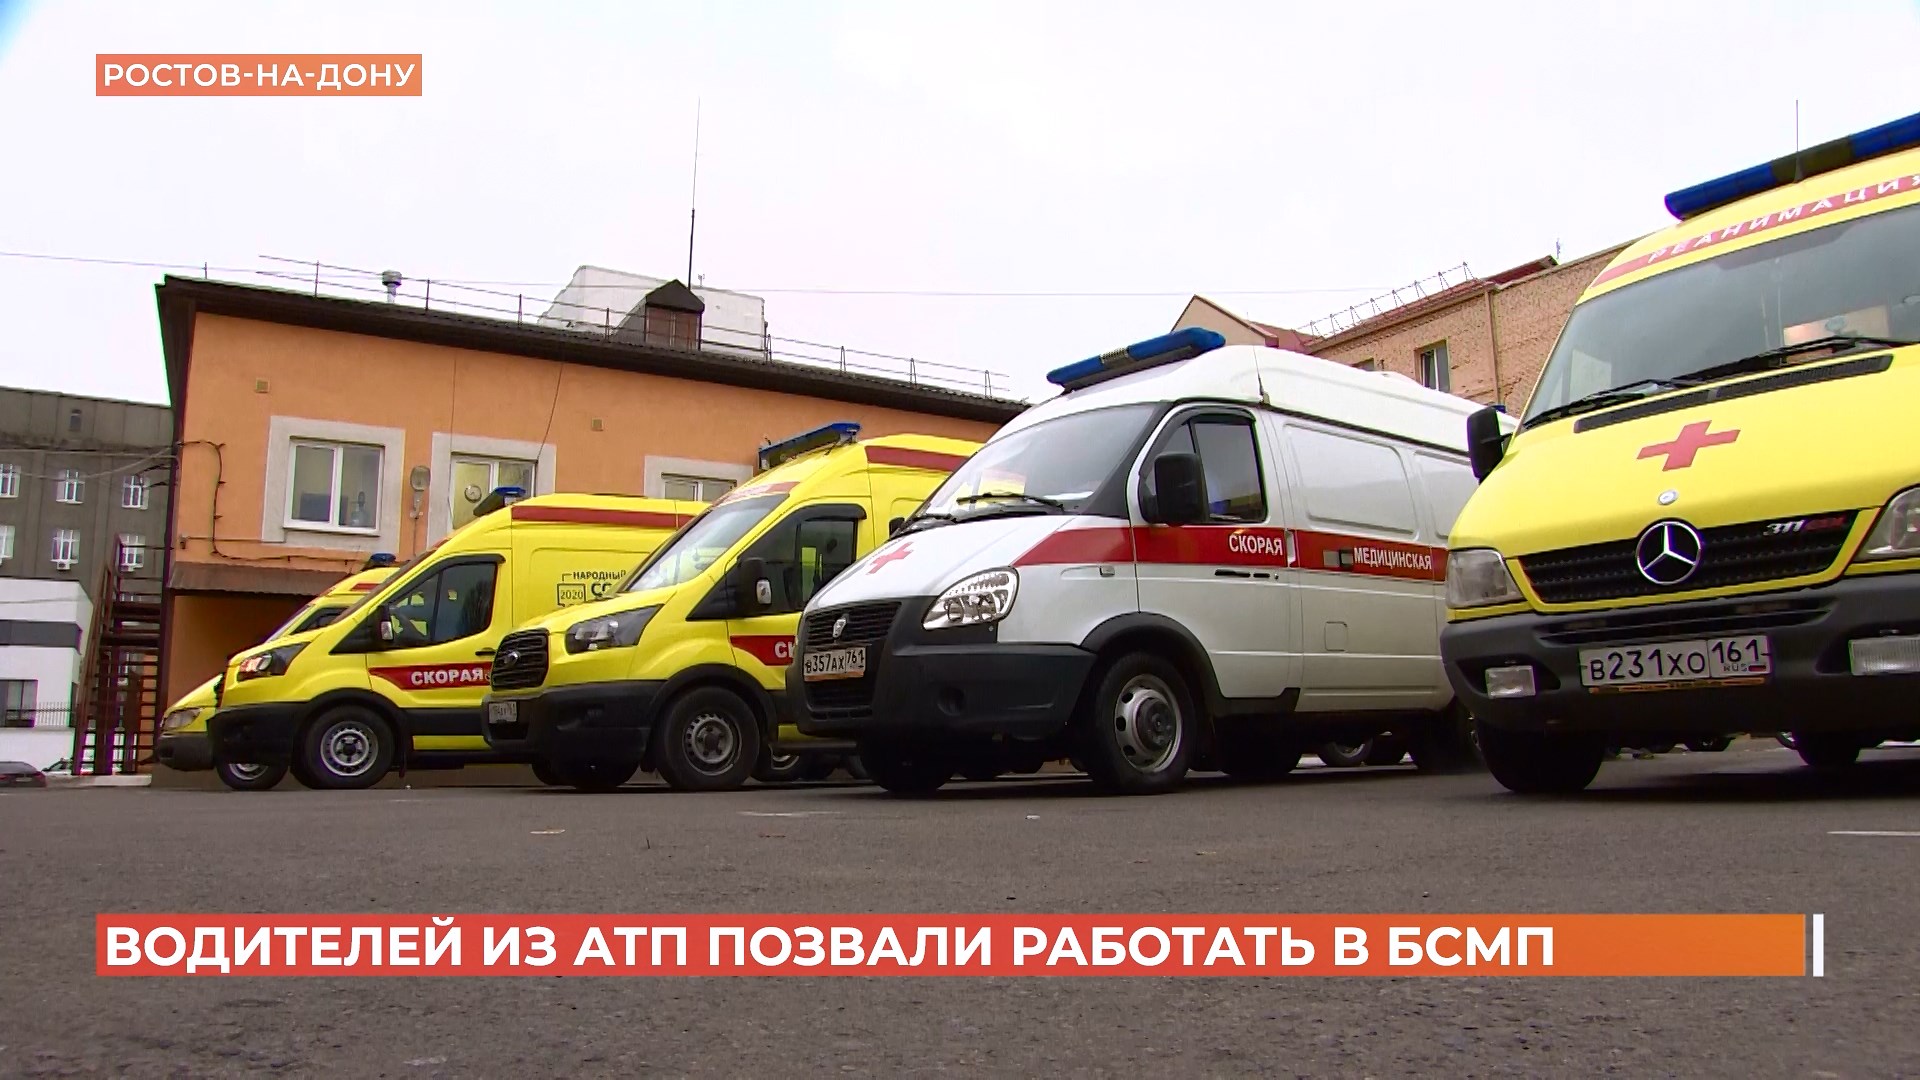 13 водителей общественного транспорта пересели на машины скорой помощи в Ростове